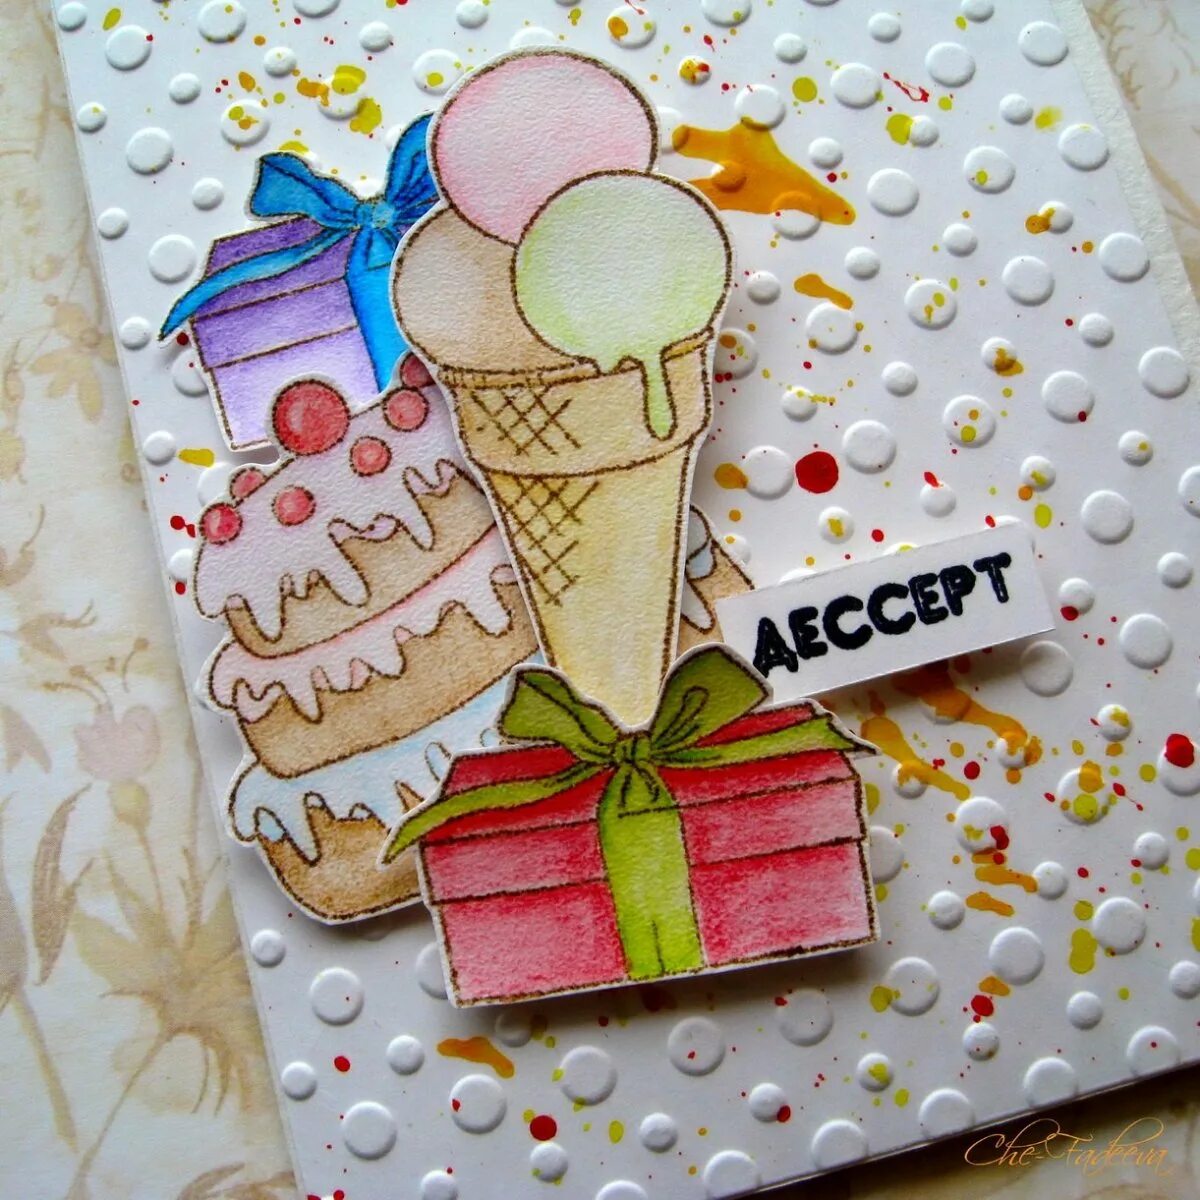 Открытка со сладостями. Идеи для открыток на день рождения. Открытка из сладостей. Открытка со сладостями на день рождения. Открытка своими руками на день рождения девочке